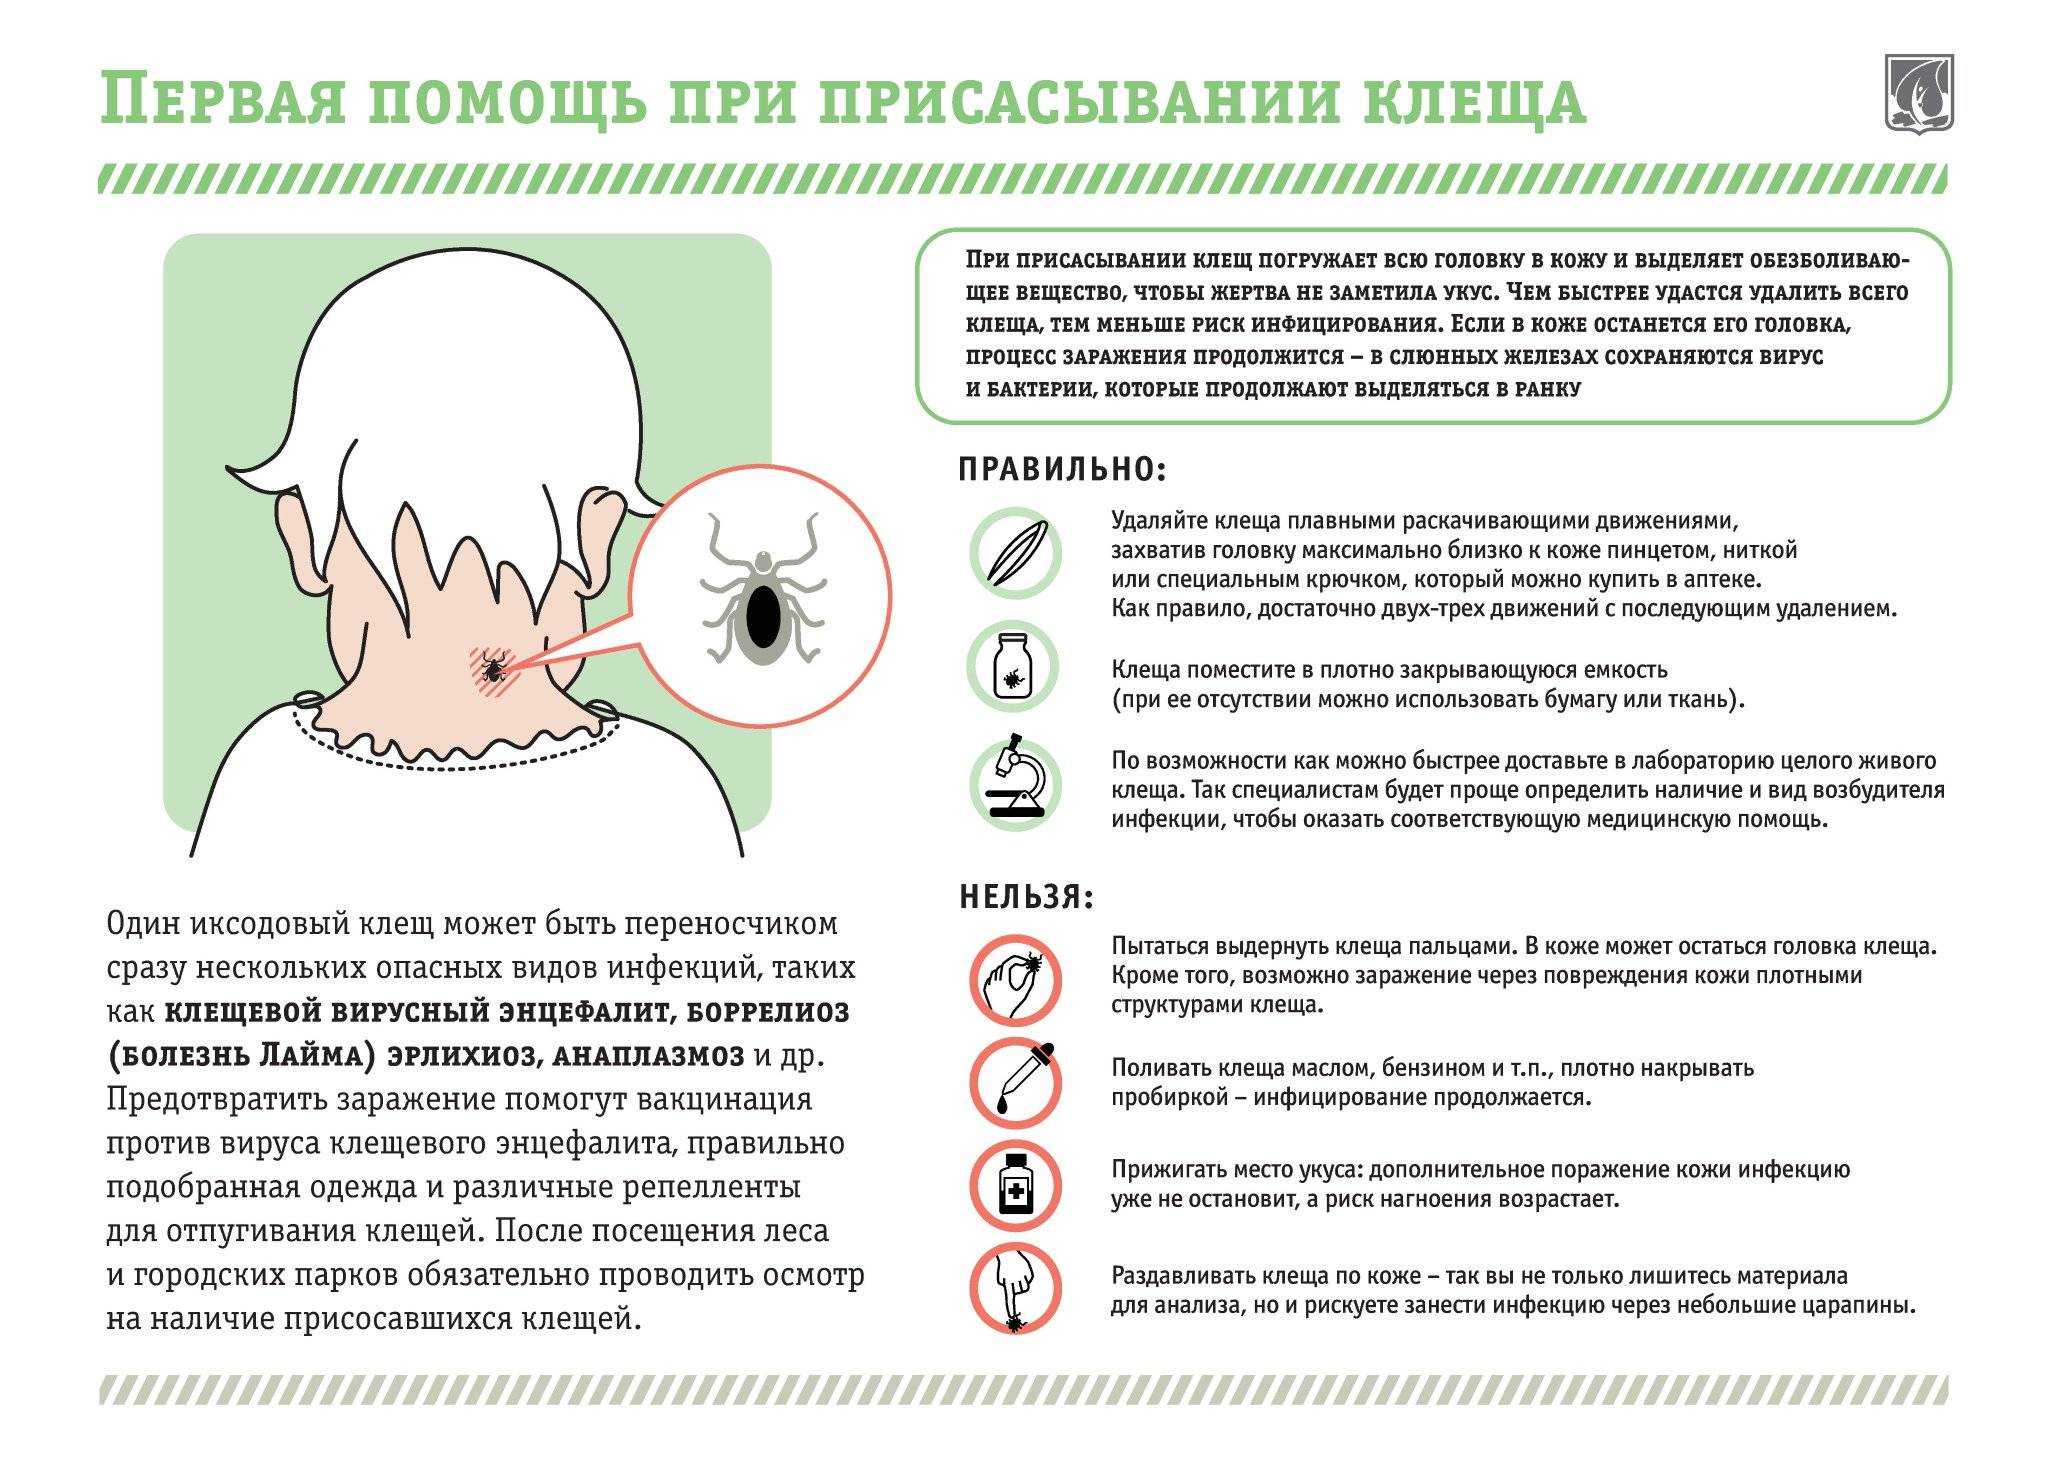 Токсокароз: симптомы и лечение у взрослых и детей. токсокара в организме человека - medside.ru